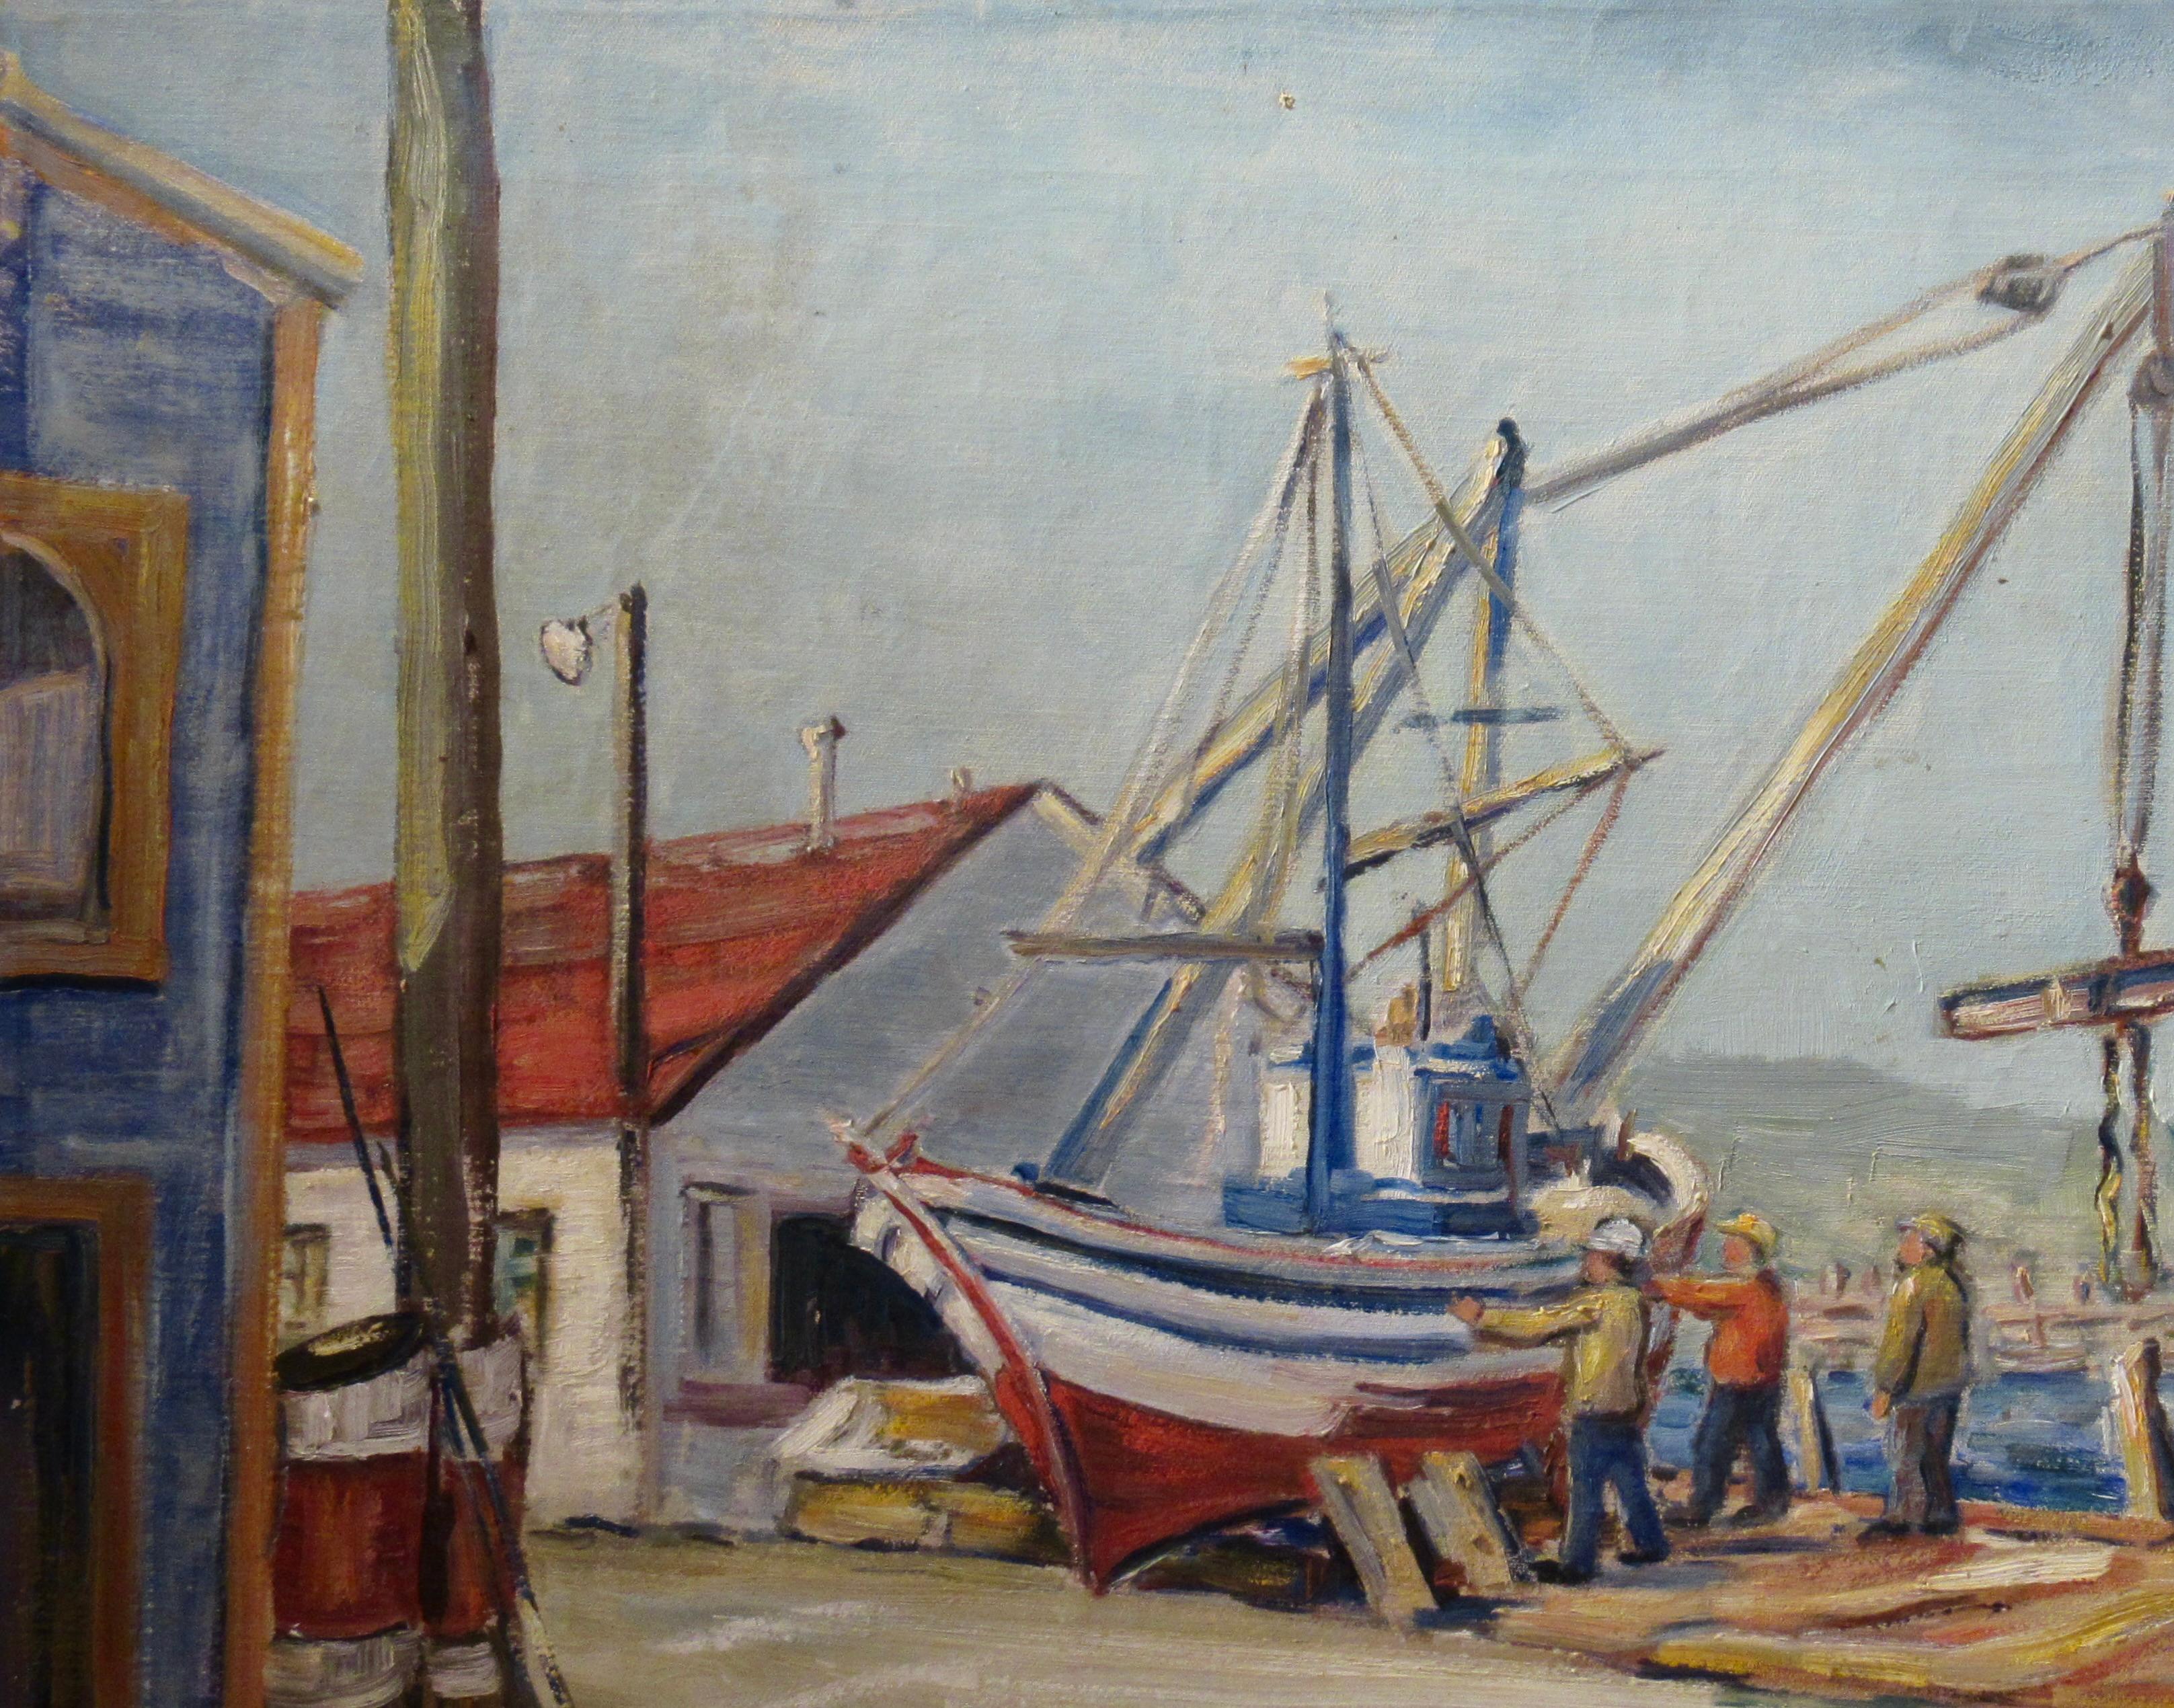 Reparaturen von Booten, Monterey Dock – Painting von Veda Fero Carnaham Dayton